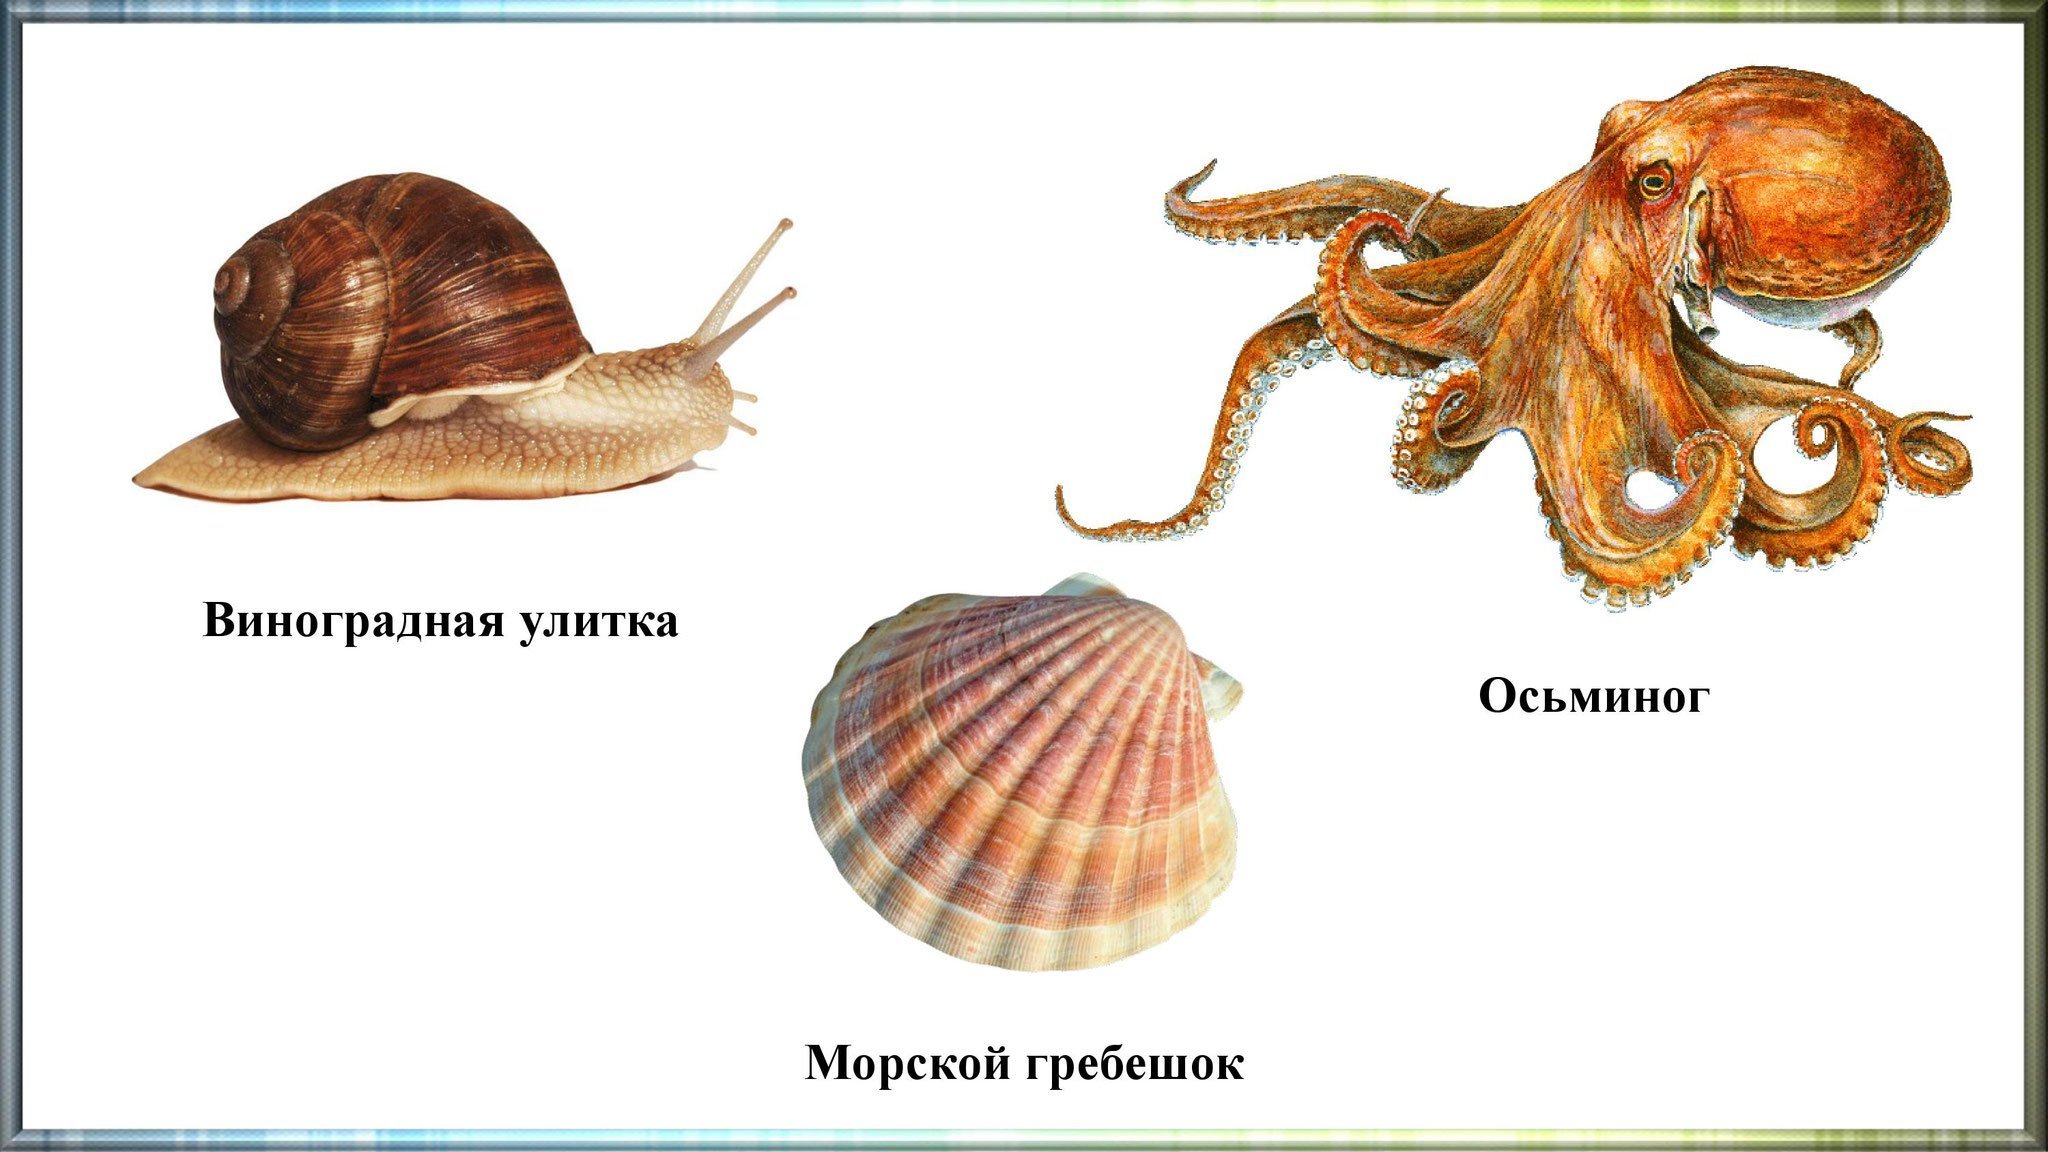 Приведите по три примера животных моллюски